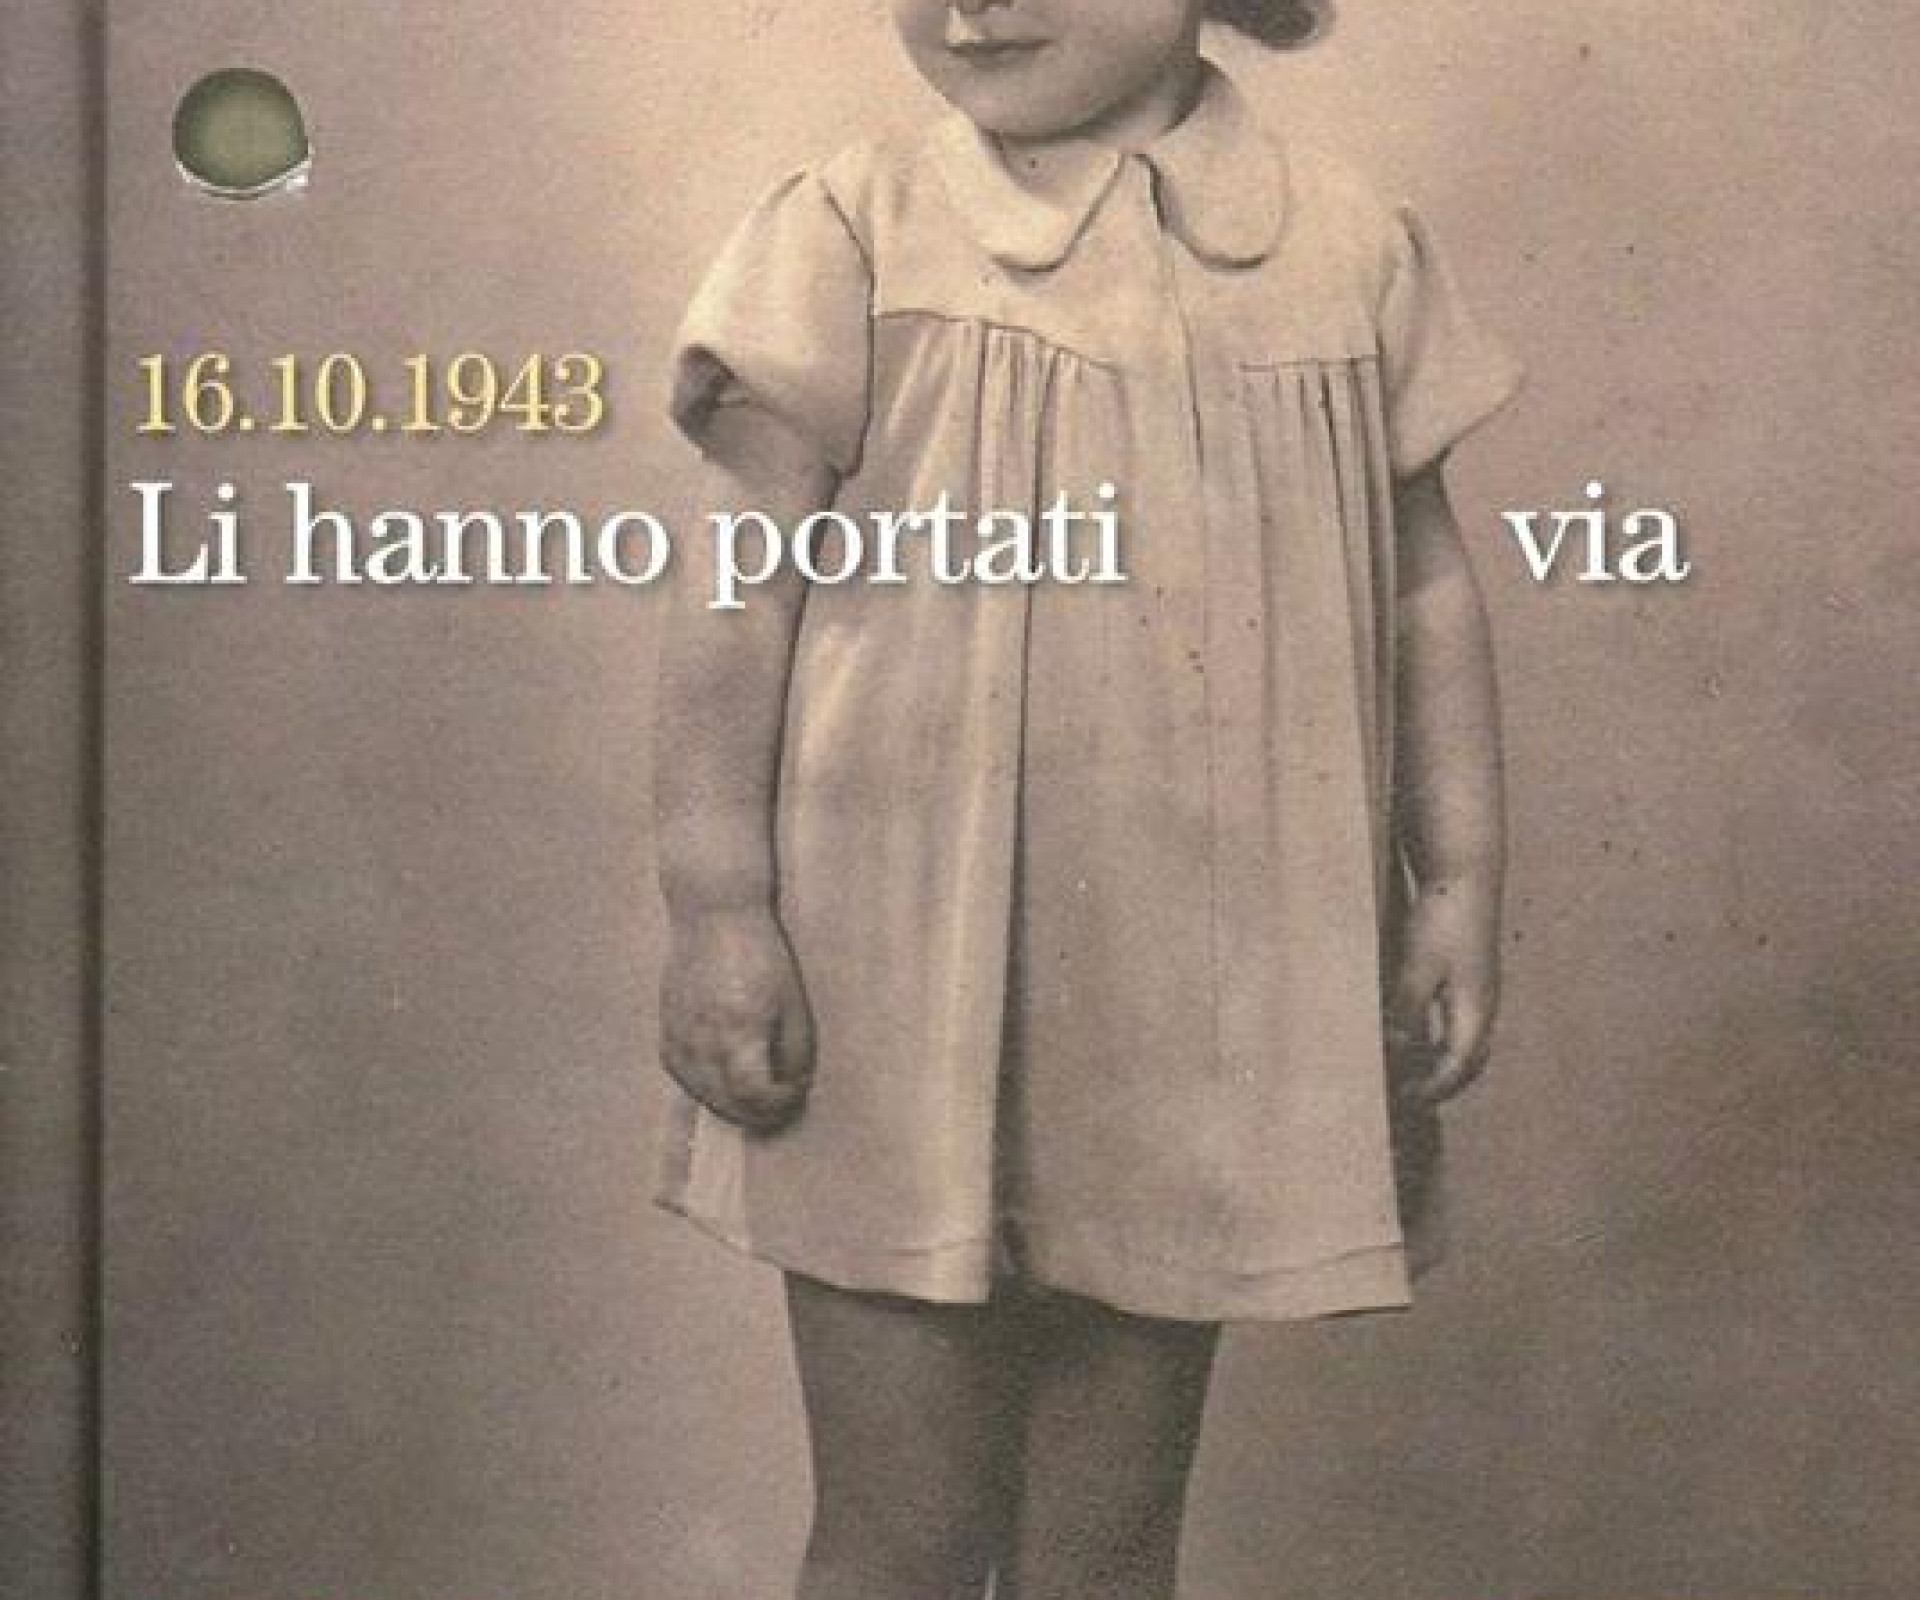 16.10.1943  "LI HANNO PORTATI VIA" a cura di Umberto Gentiloni e Stefano Palermo - FANDANGO libri